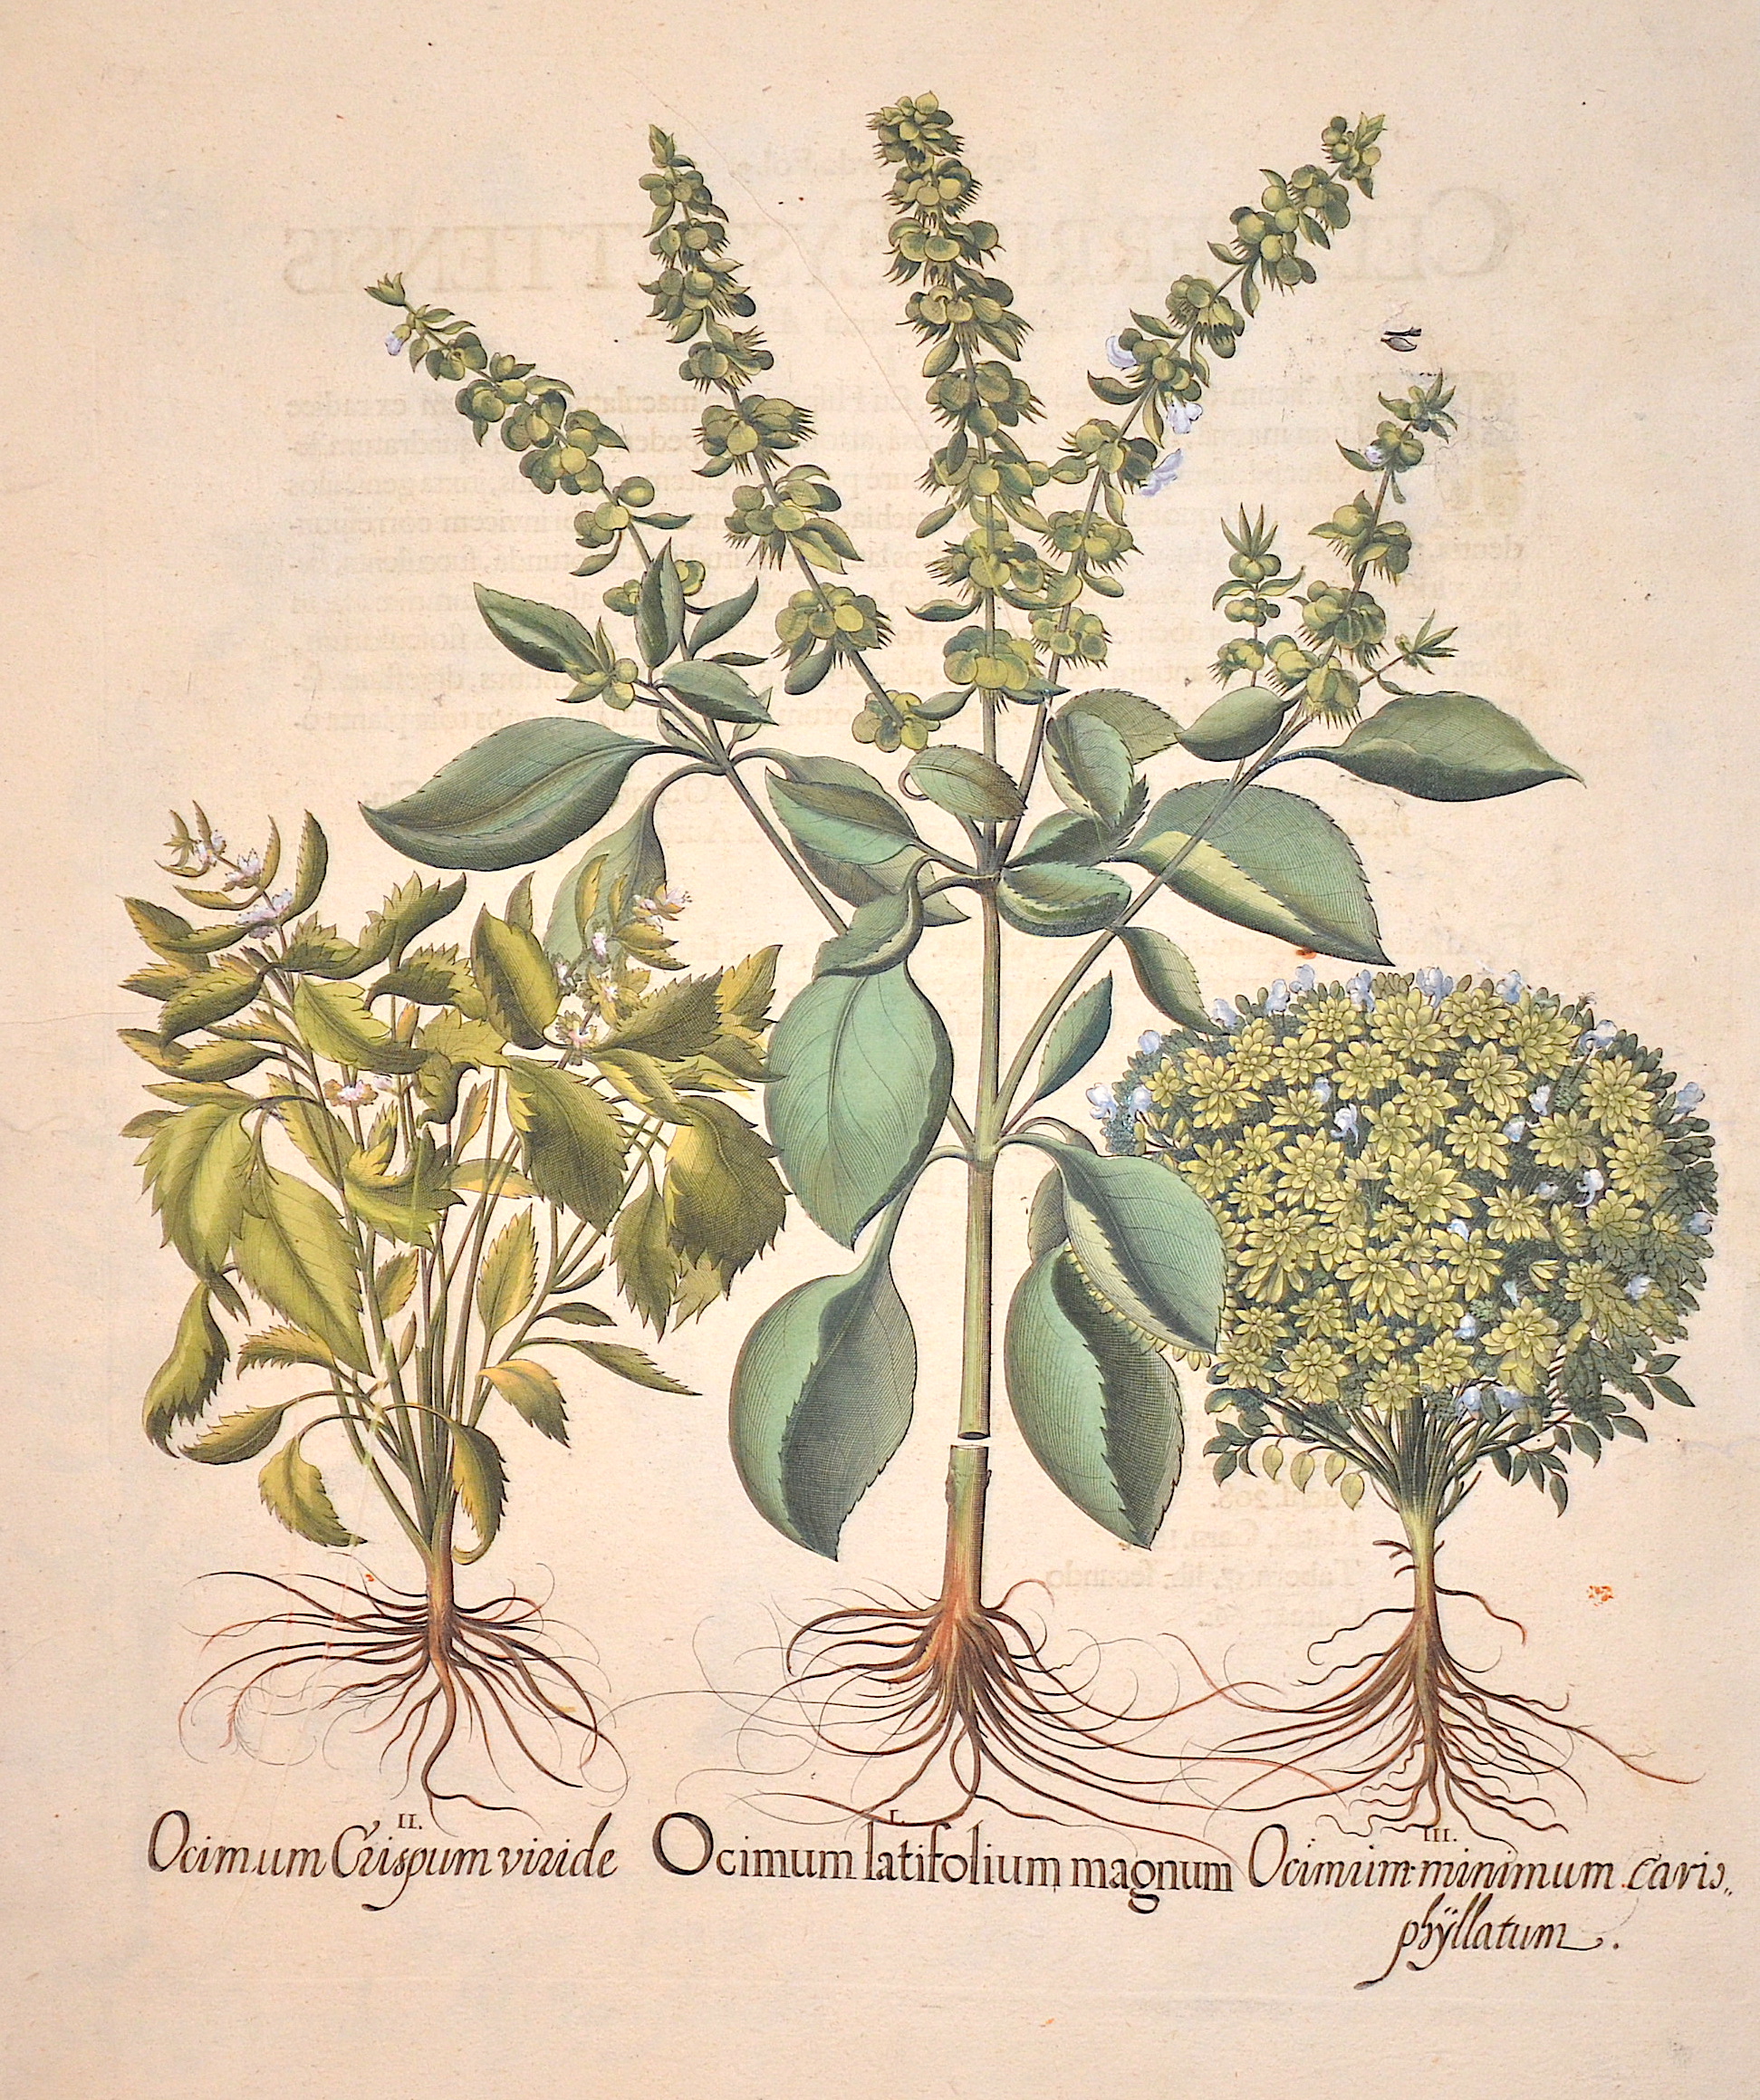 Besler  Ocimum latifolium magnim/ Ocimum crispum viride/ Ocimum minimum cario phyllatum